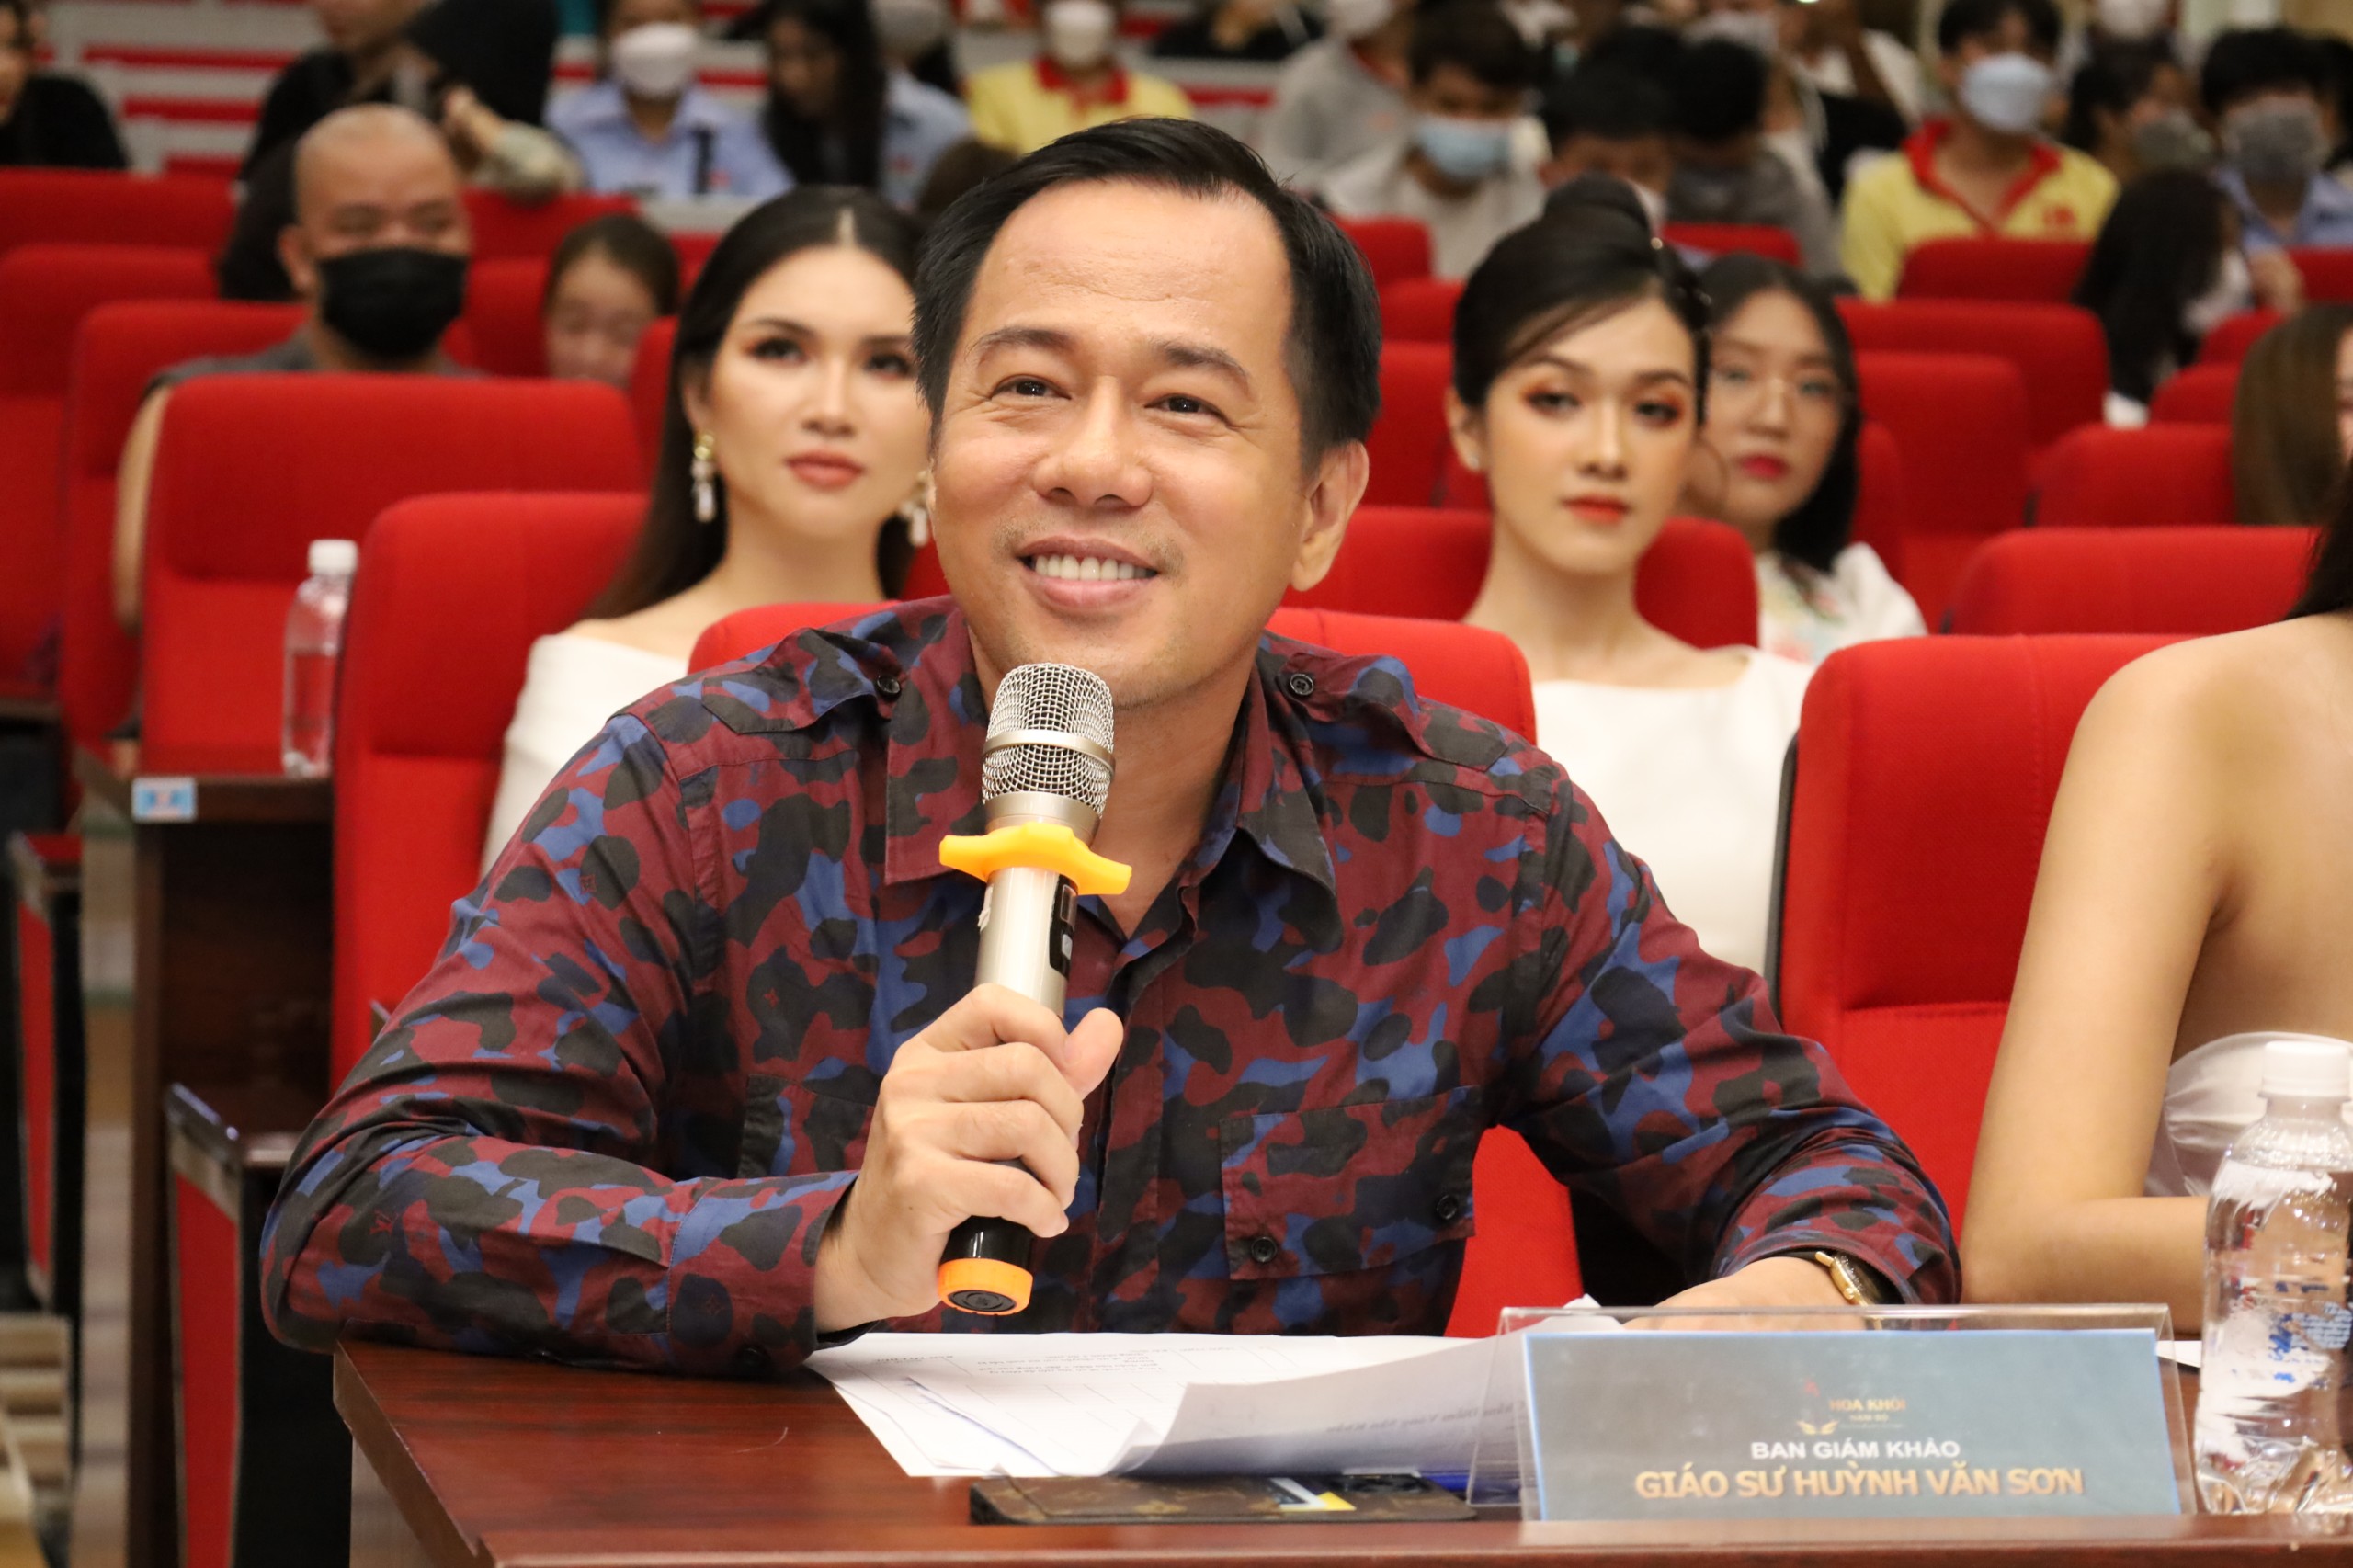 Giáo sư Huỳnh Văn Sơn - Hiệu trưởng Trường Đại học Sư phạm TP. Hồ Chí Minh đặt câu hỏi cho thí sinh.